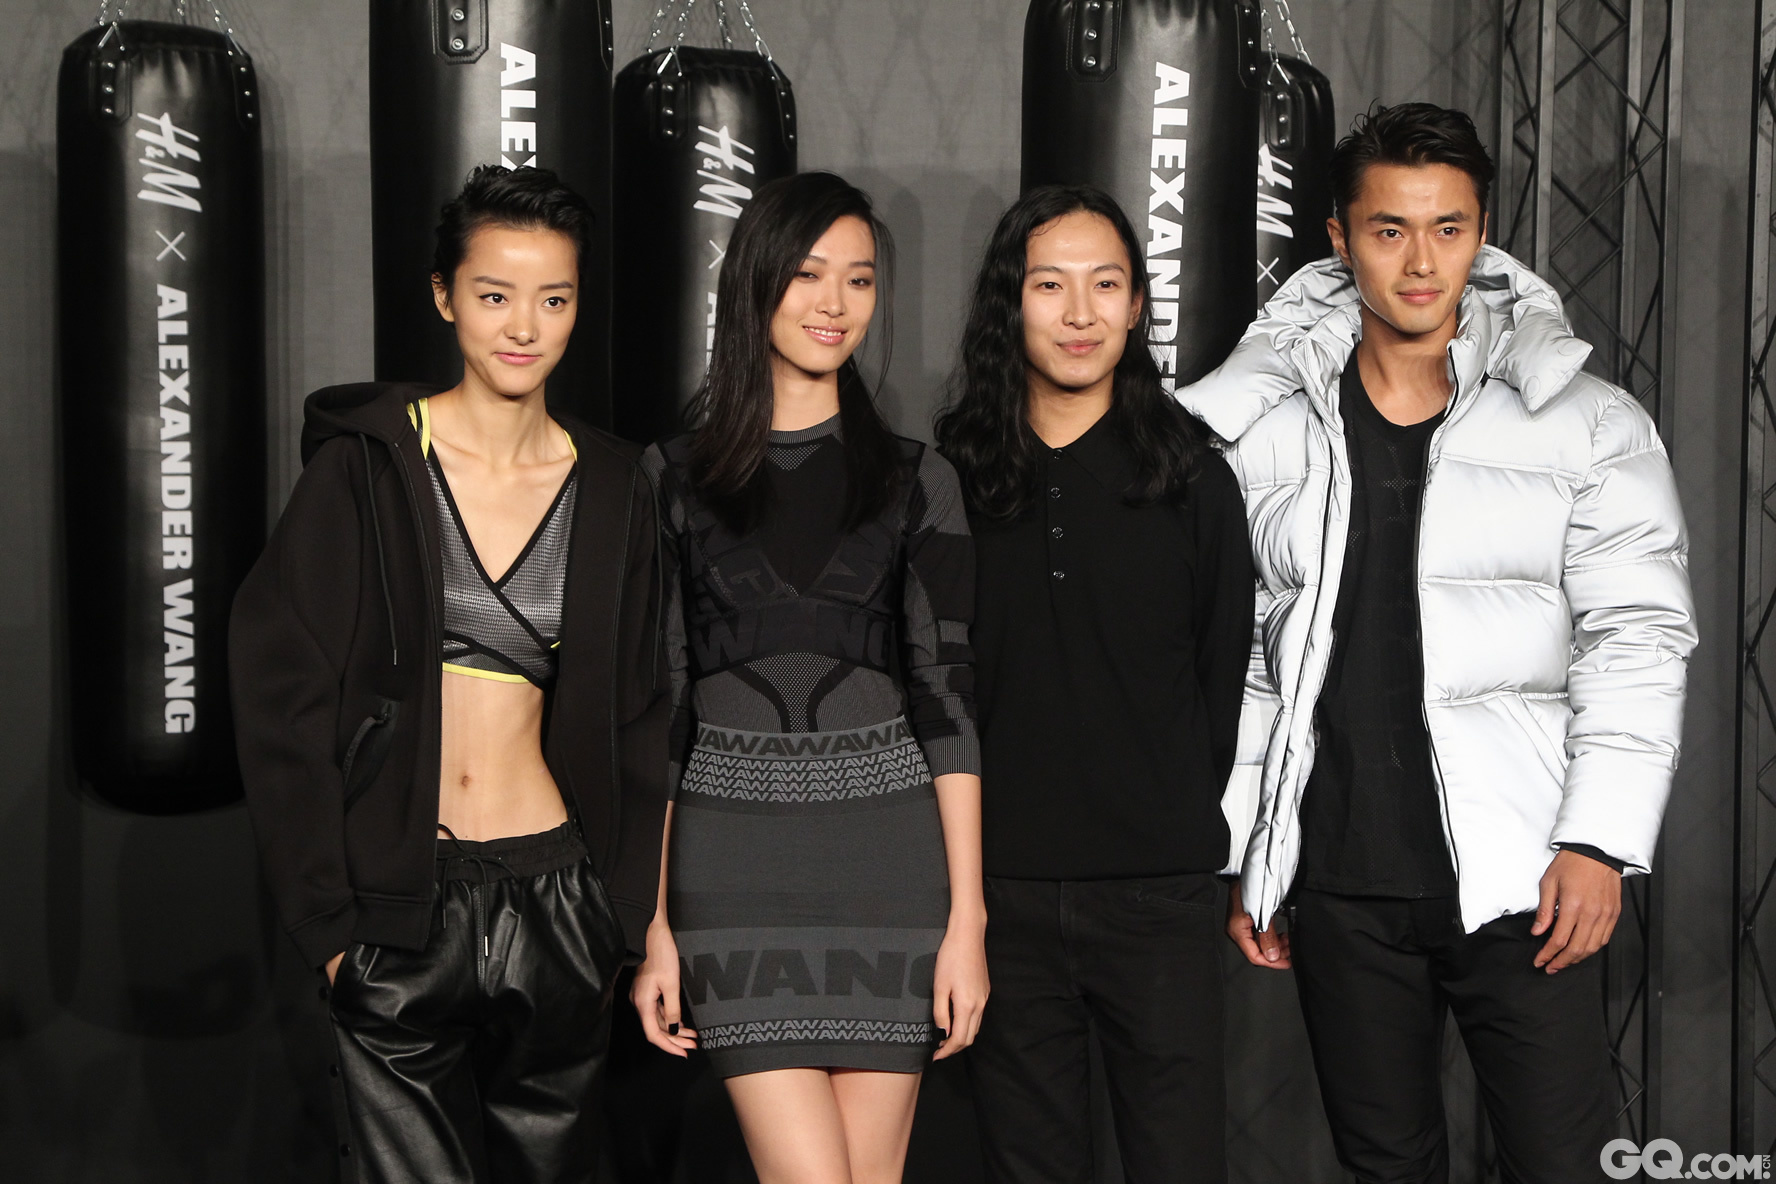 除了巨星助阵外，针对全新Alexander Wang X H&M合作系列而设的“预售环节”可谓派对的另一项重头戏。为了迎合时尚潮人们对新系列的高度期待， H&M在现场打造了极具摩登感的Pop－up store预售区域，让当晚的嘉宾可以第一时间抢购到自己心仪的热门单品。（从左至右）裴蓓、游天翼、Alexander Wang和赵磊亮相红毯